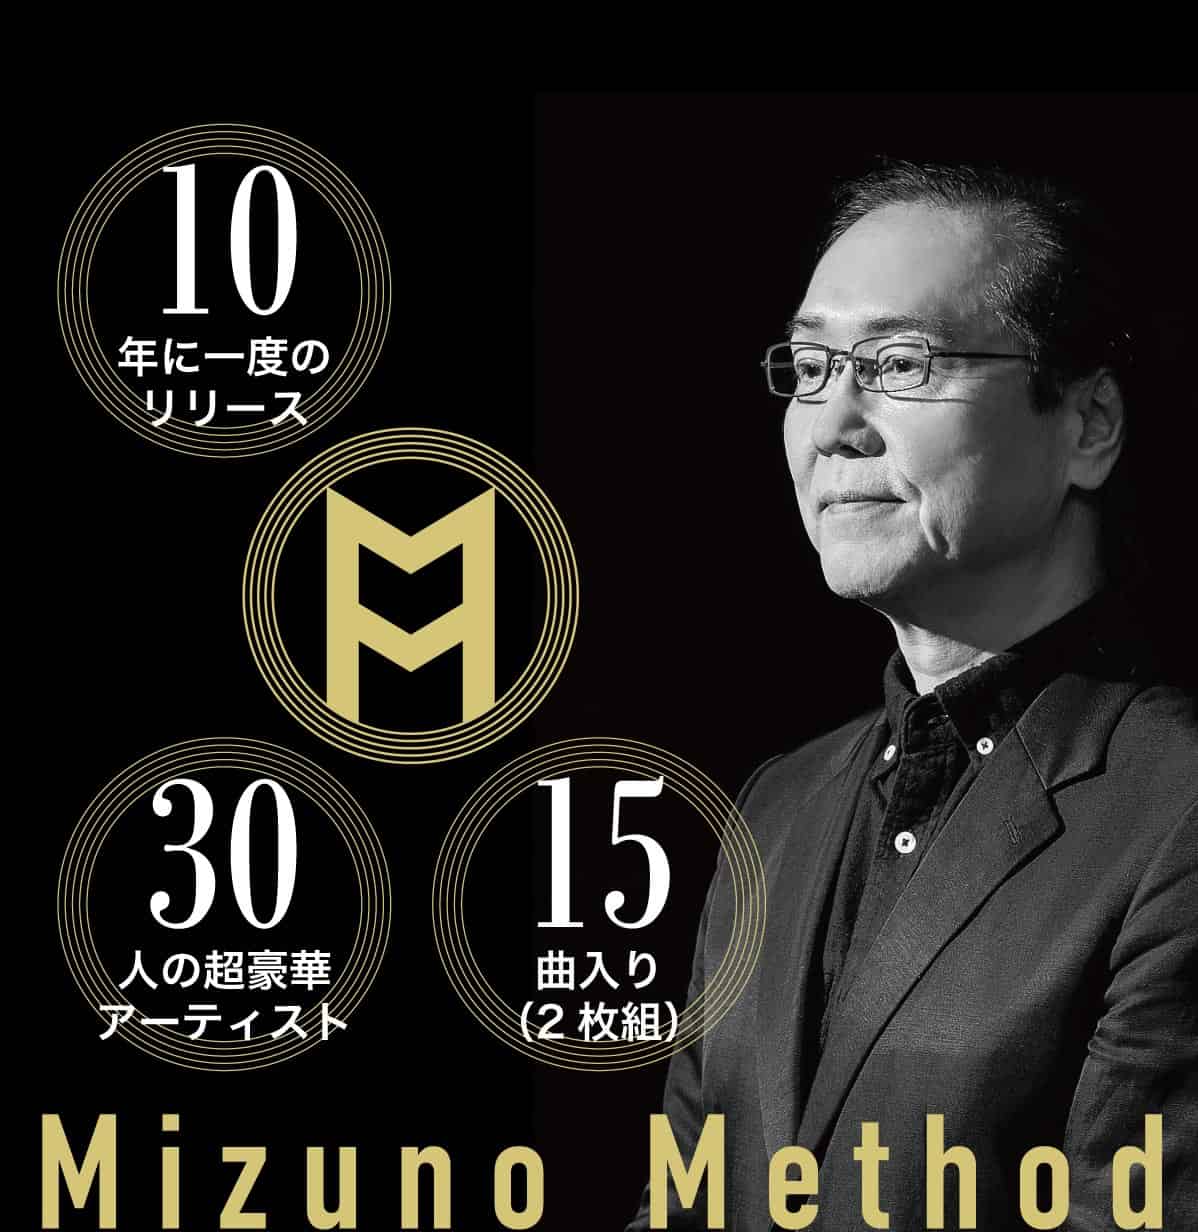 村上ポンタ秀一、川口千里など有名アーティスト30名参加の話題作MIZUNO METHOD